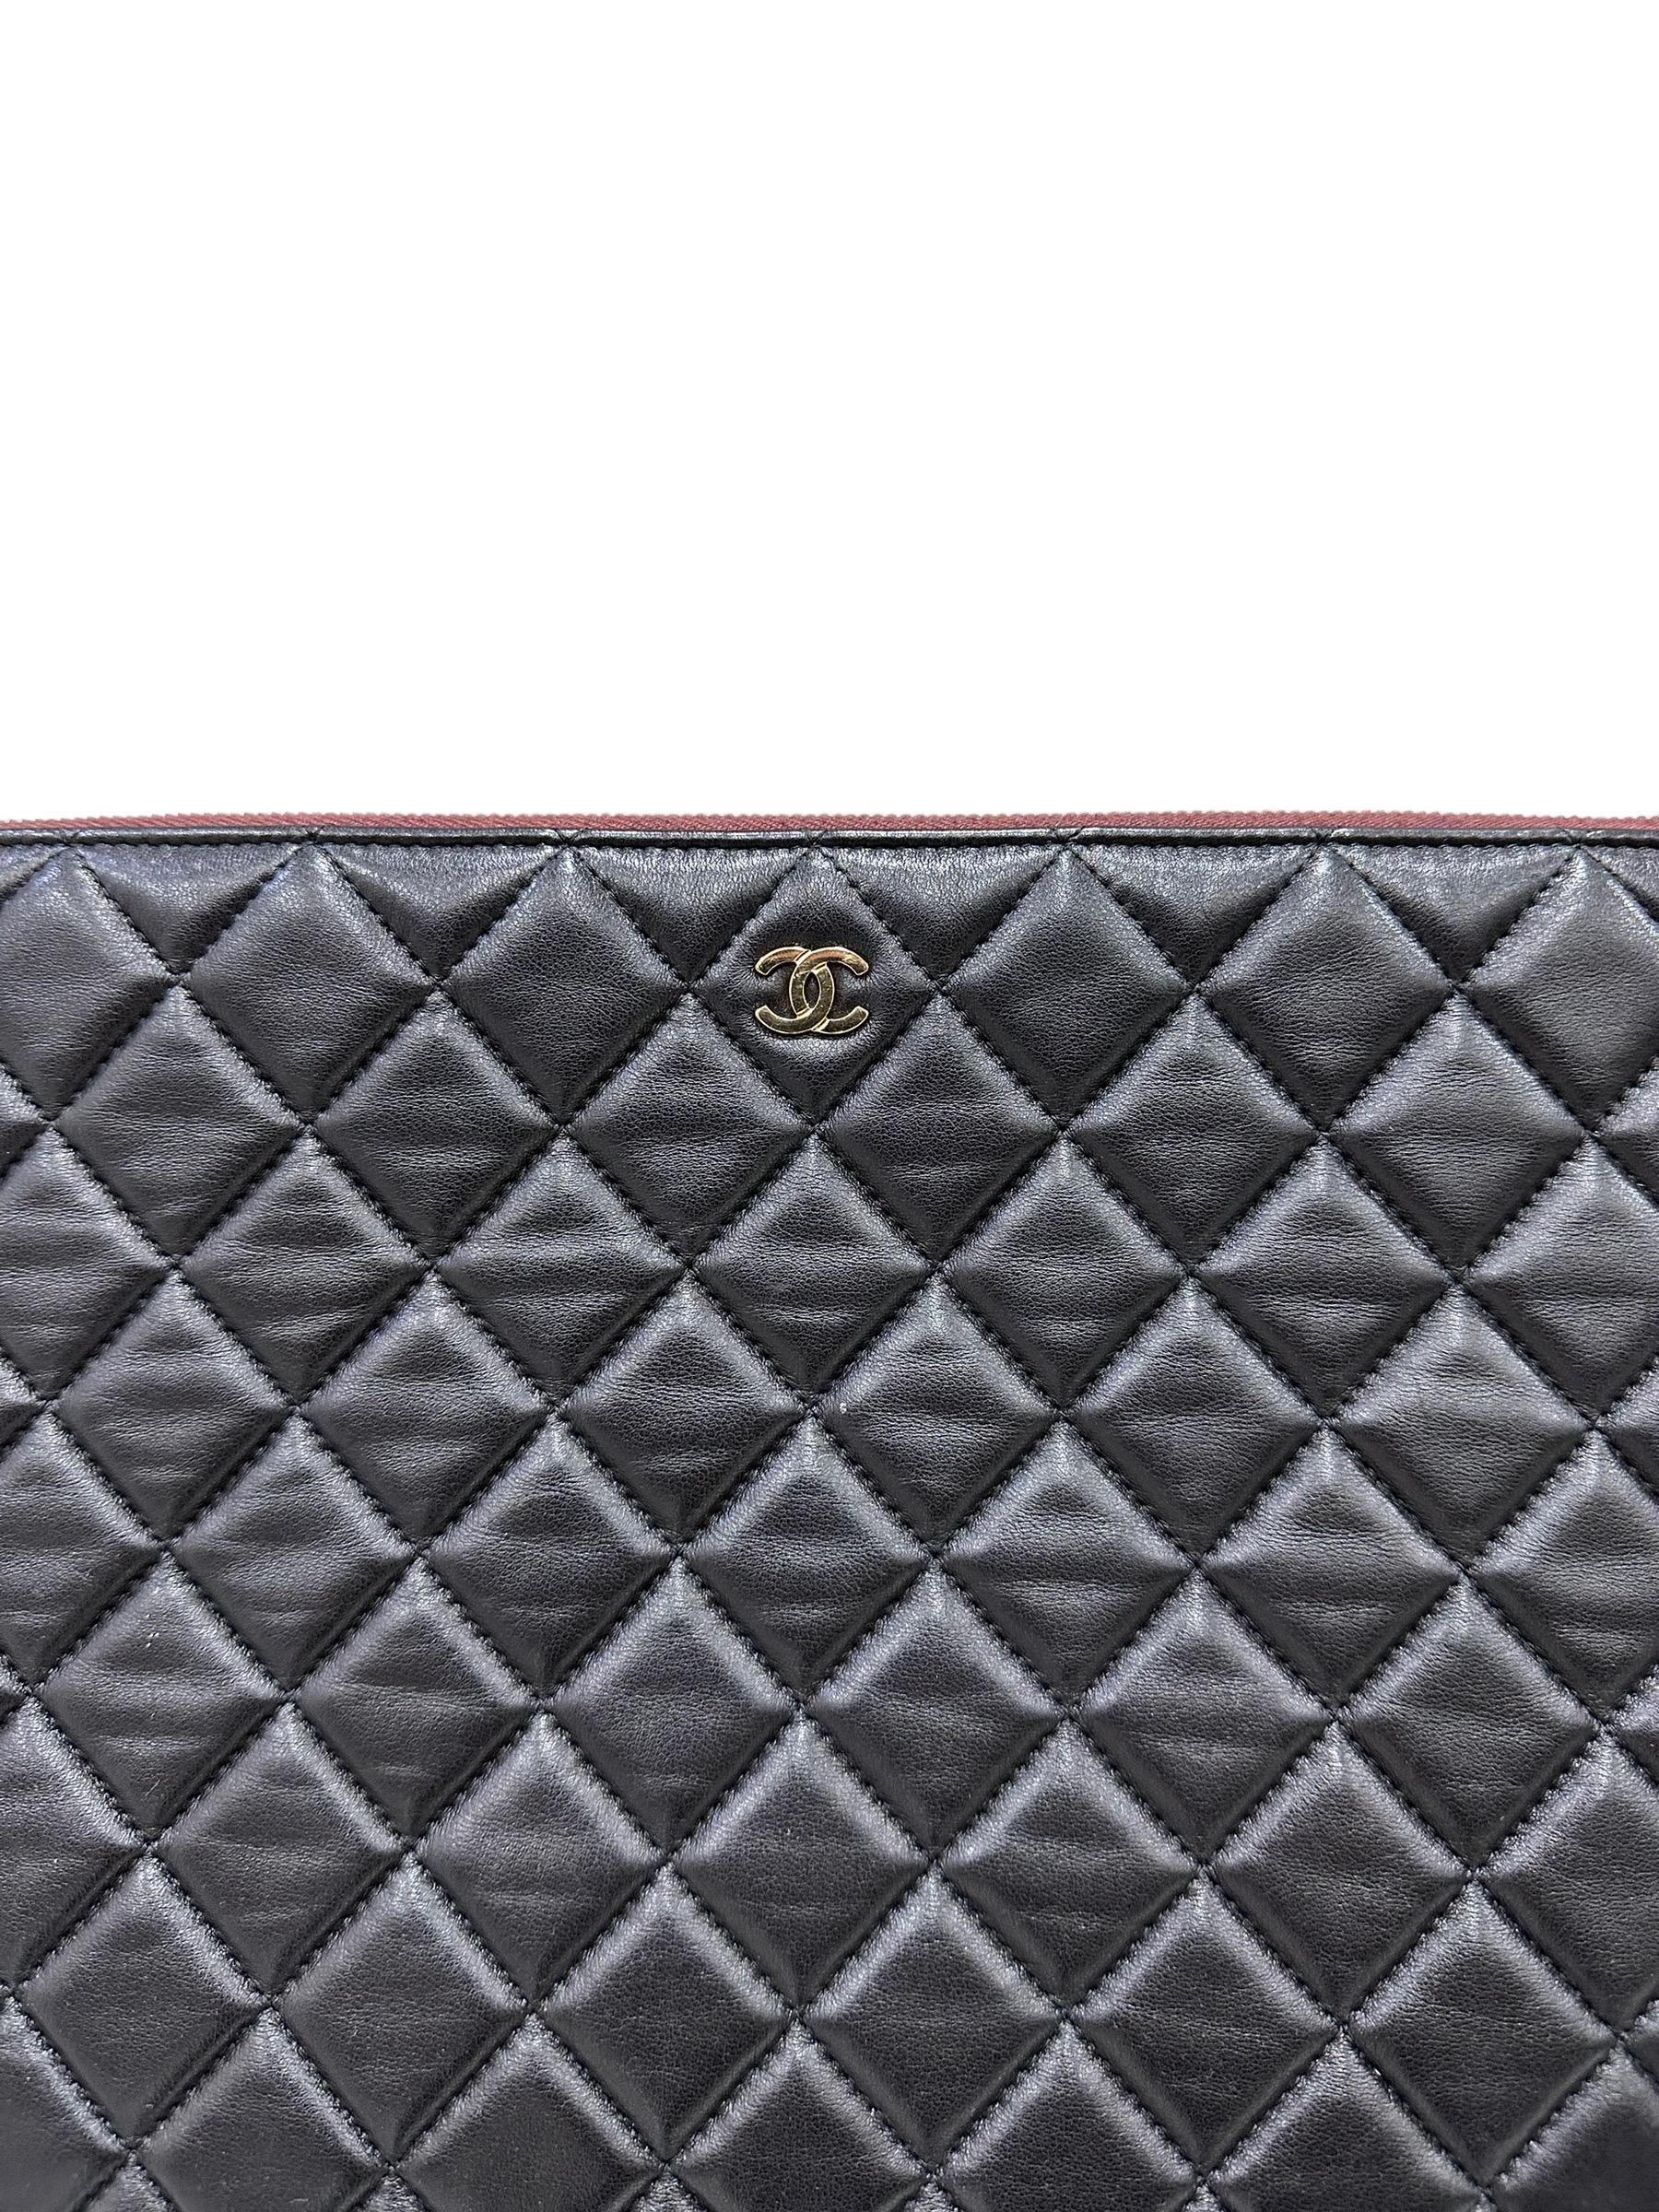 Clutch firmata Chanel, modello Timeless, realizzata in pelle liscia nera con hardware dorati. Dotata di una chiusura superiore con zip, internamente rivestita in tessuto trapuntato bordeaux, capiente per l’essenziale. Anno di produzione 2015/16, si